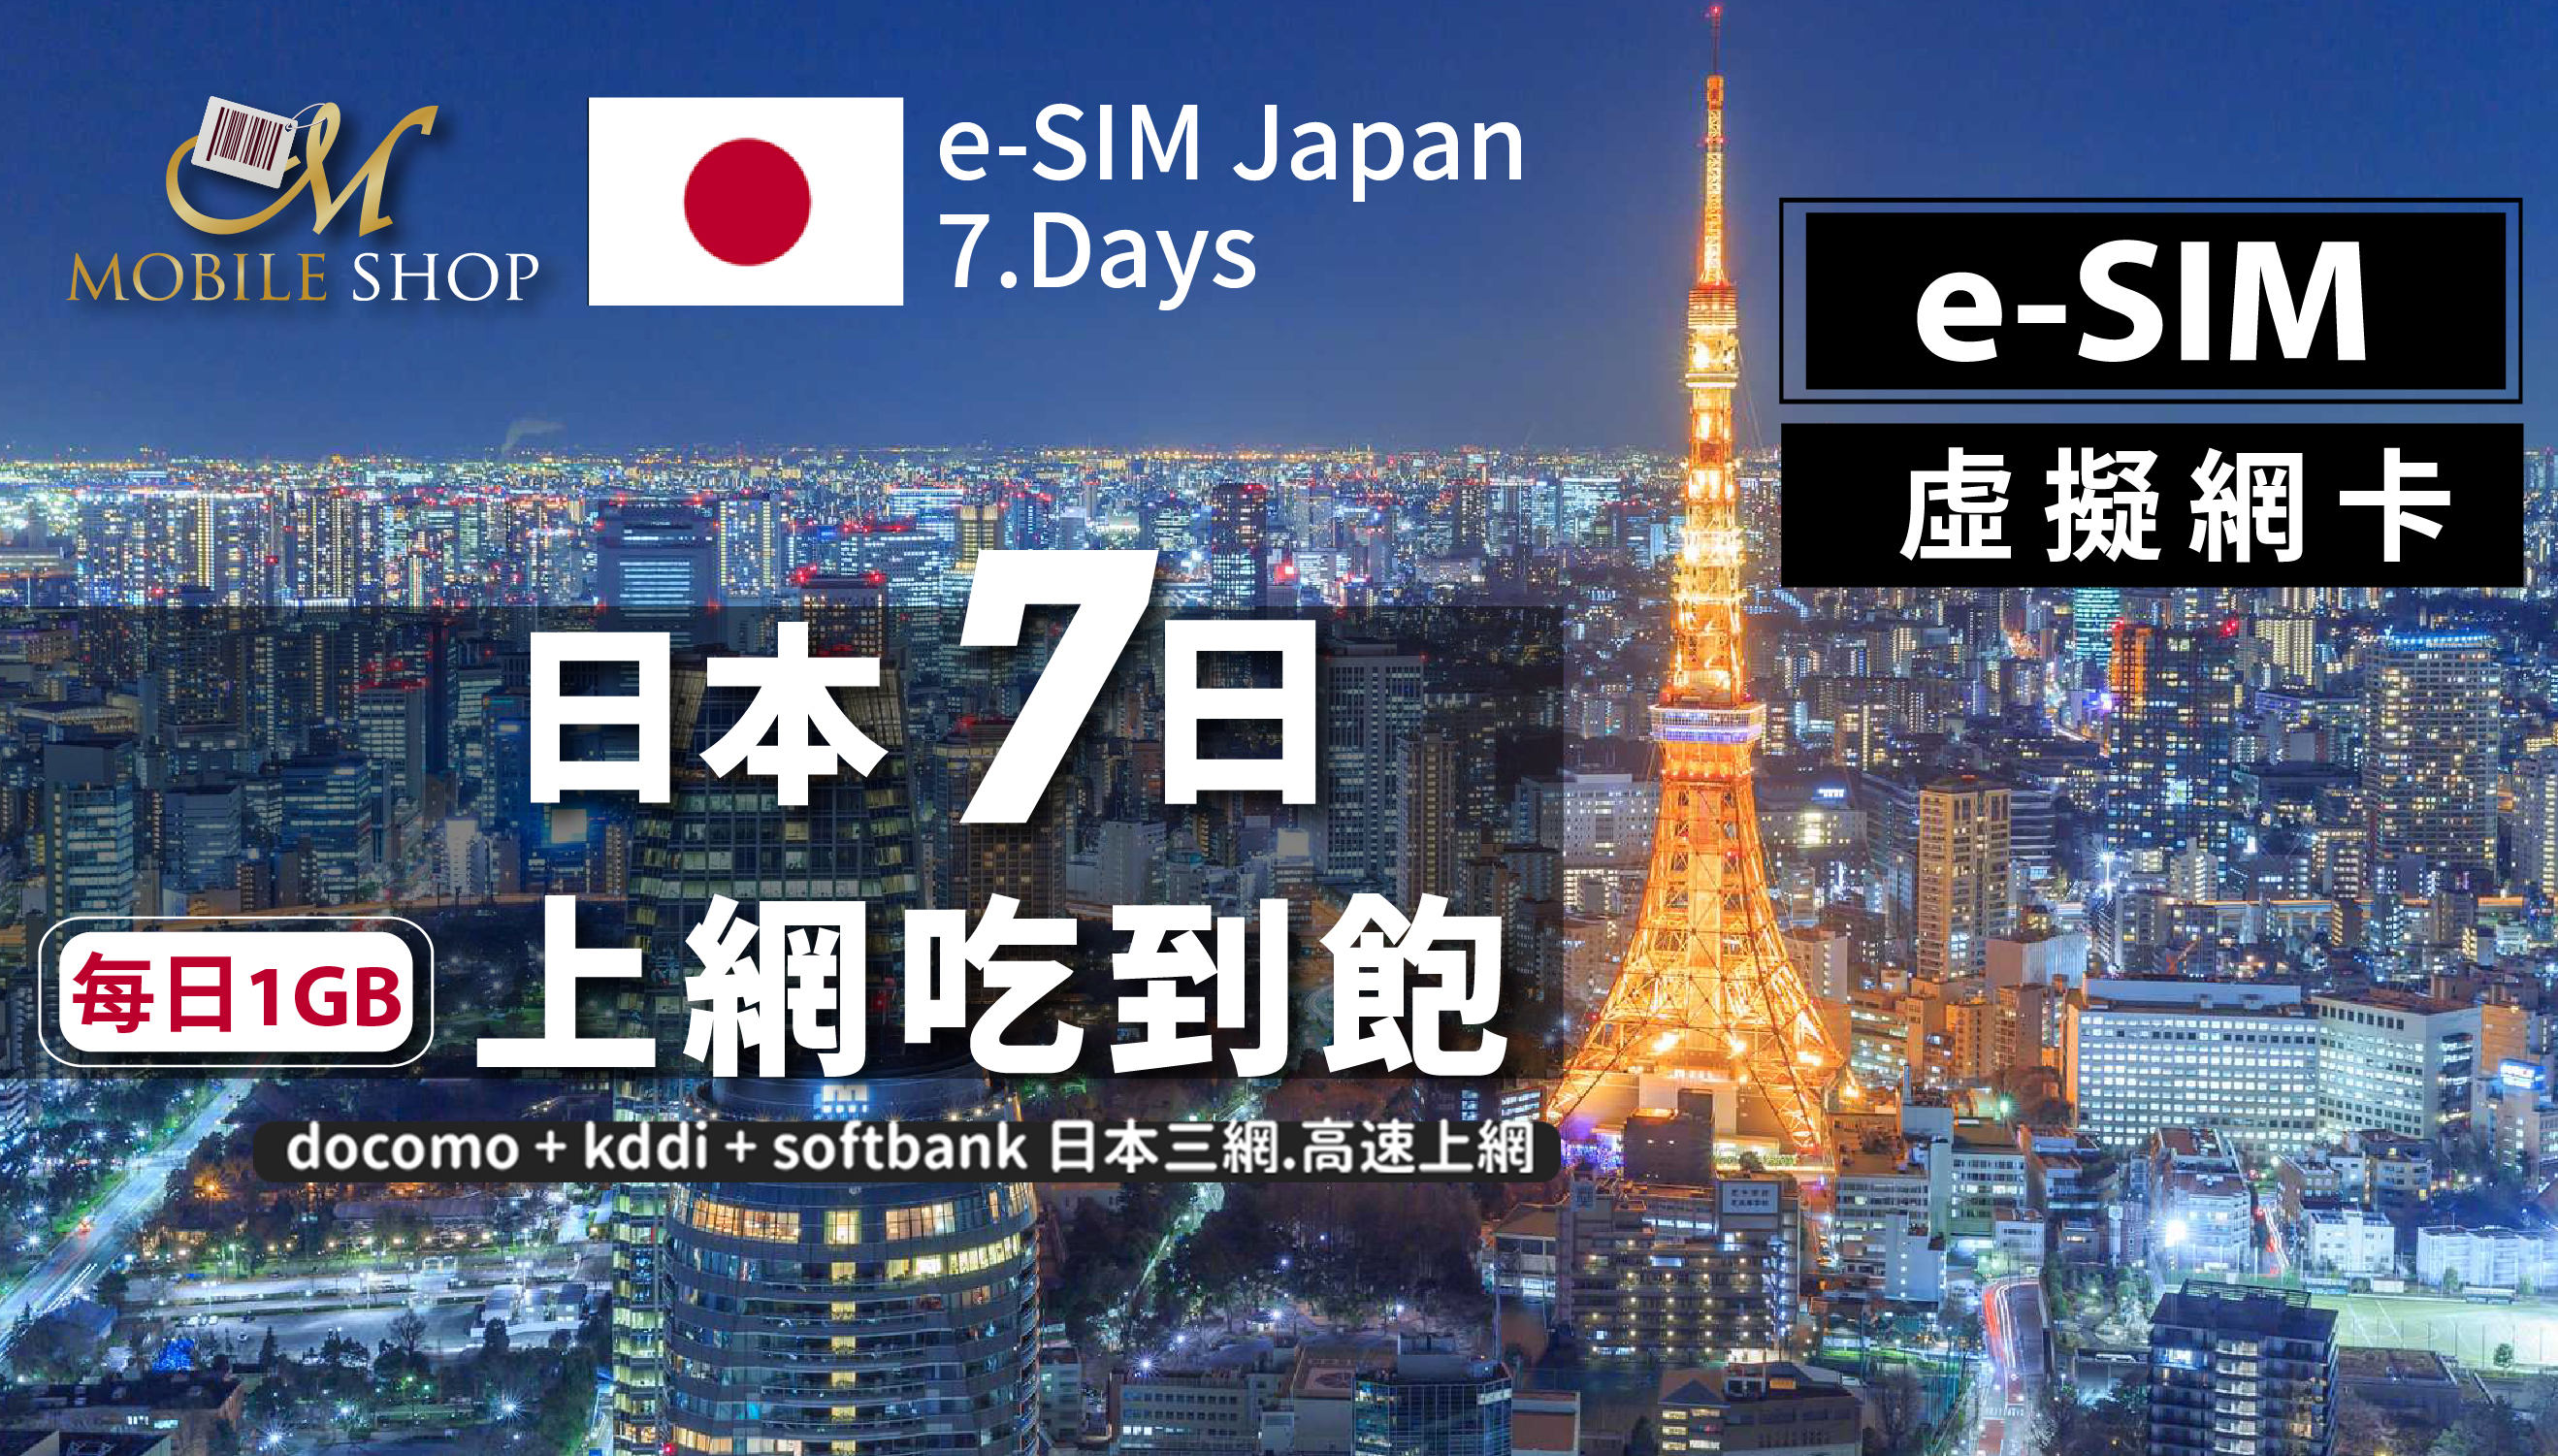 eSIM Japan 7days/1GB day unlimited data